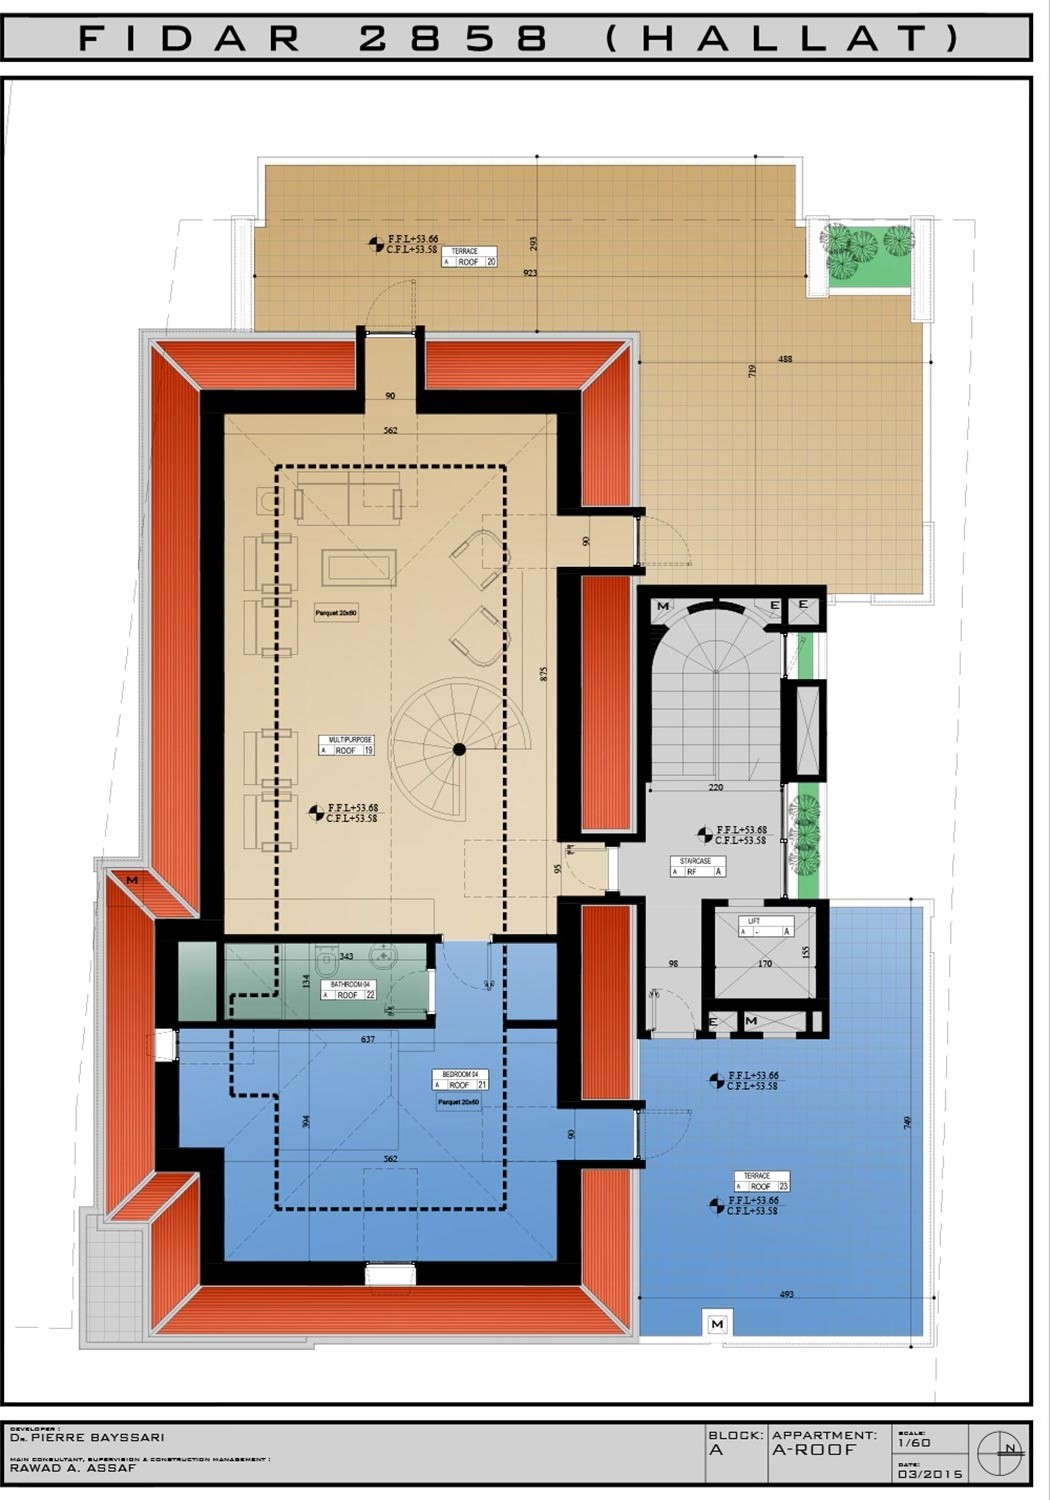 RL-2132 Duplex for Sale in Jbeil, Fidar - $ 857,000